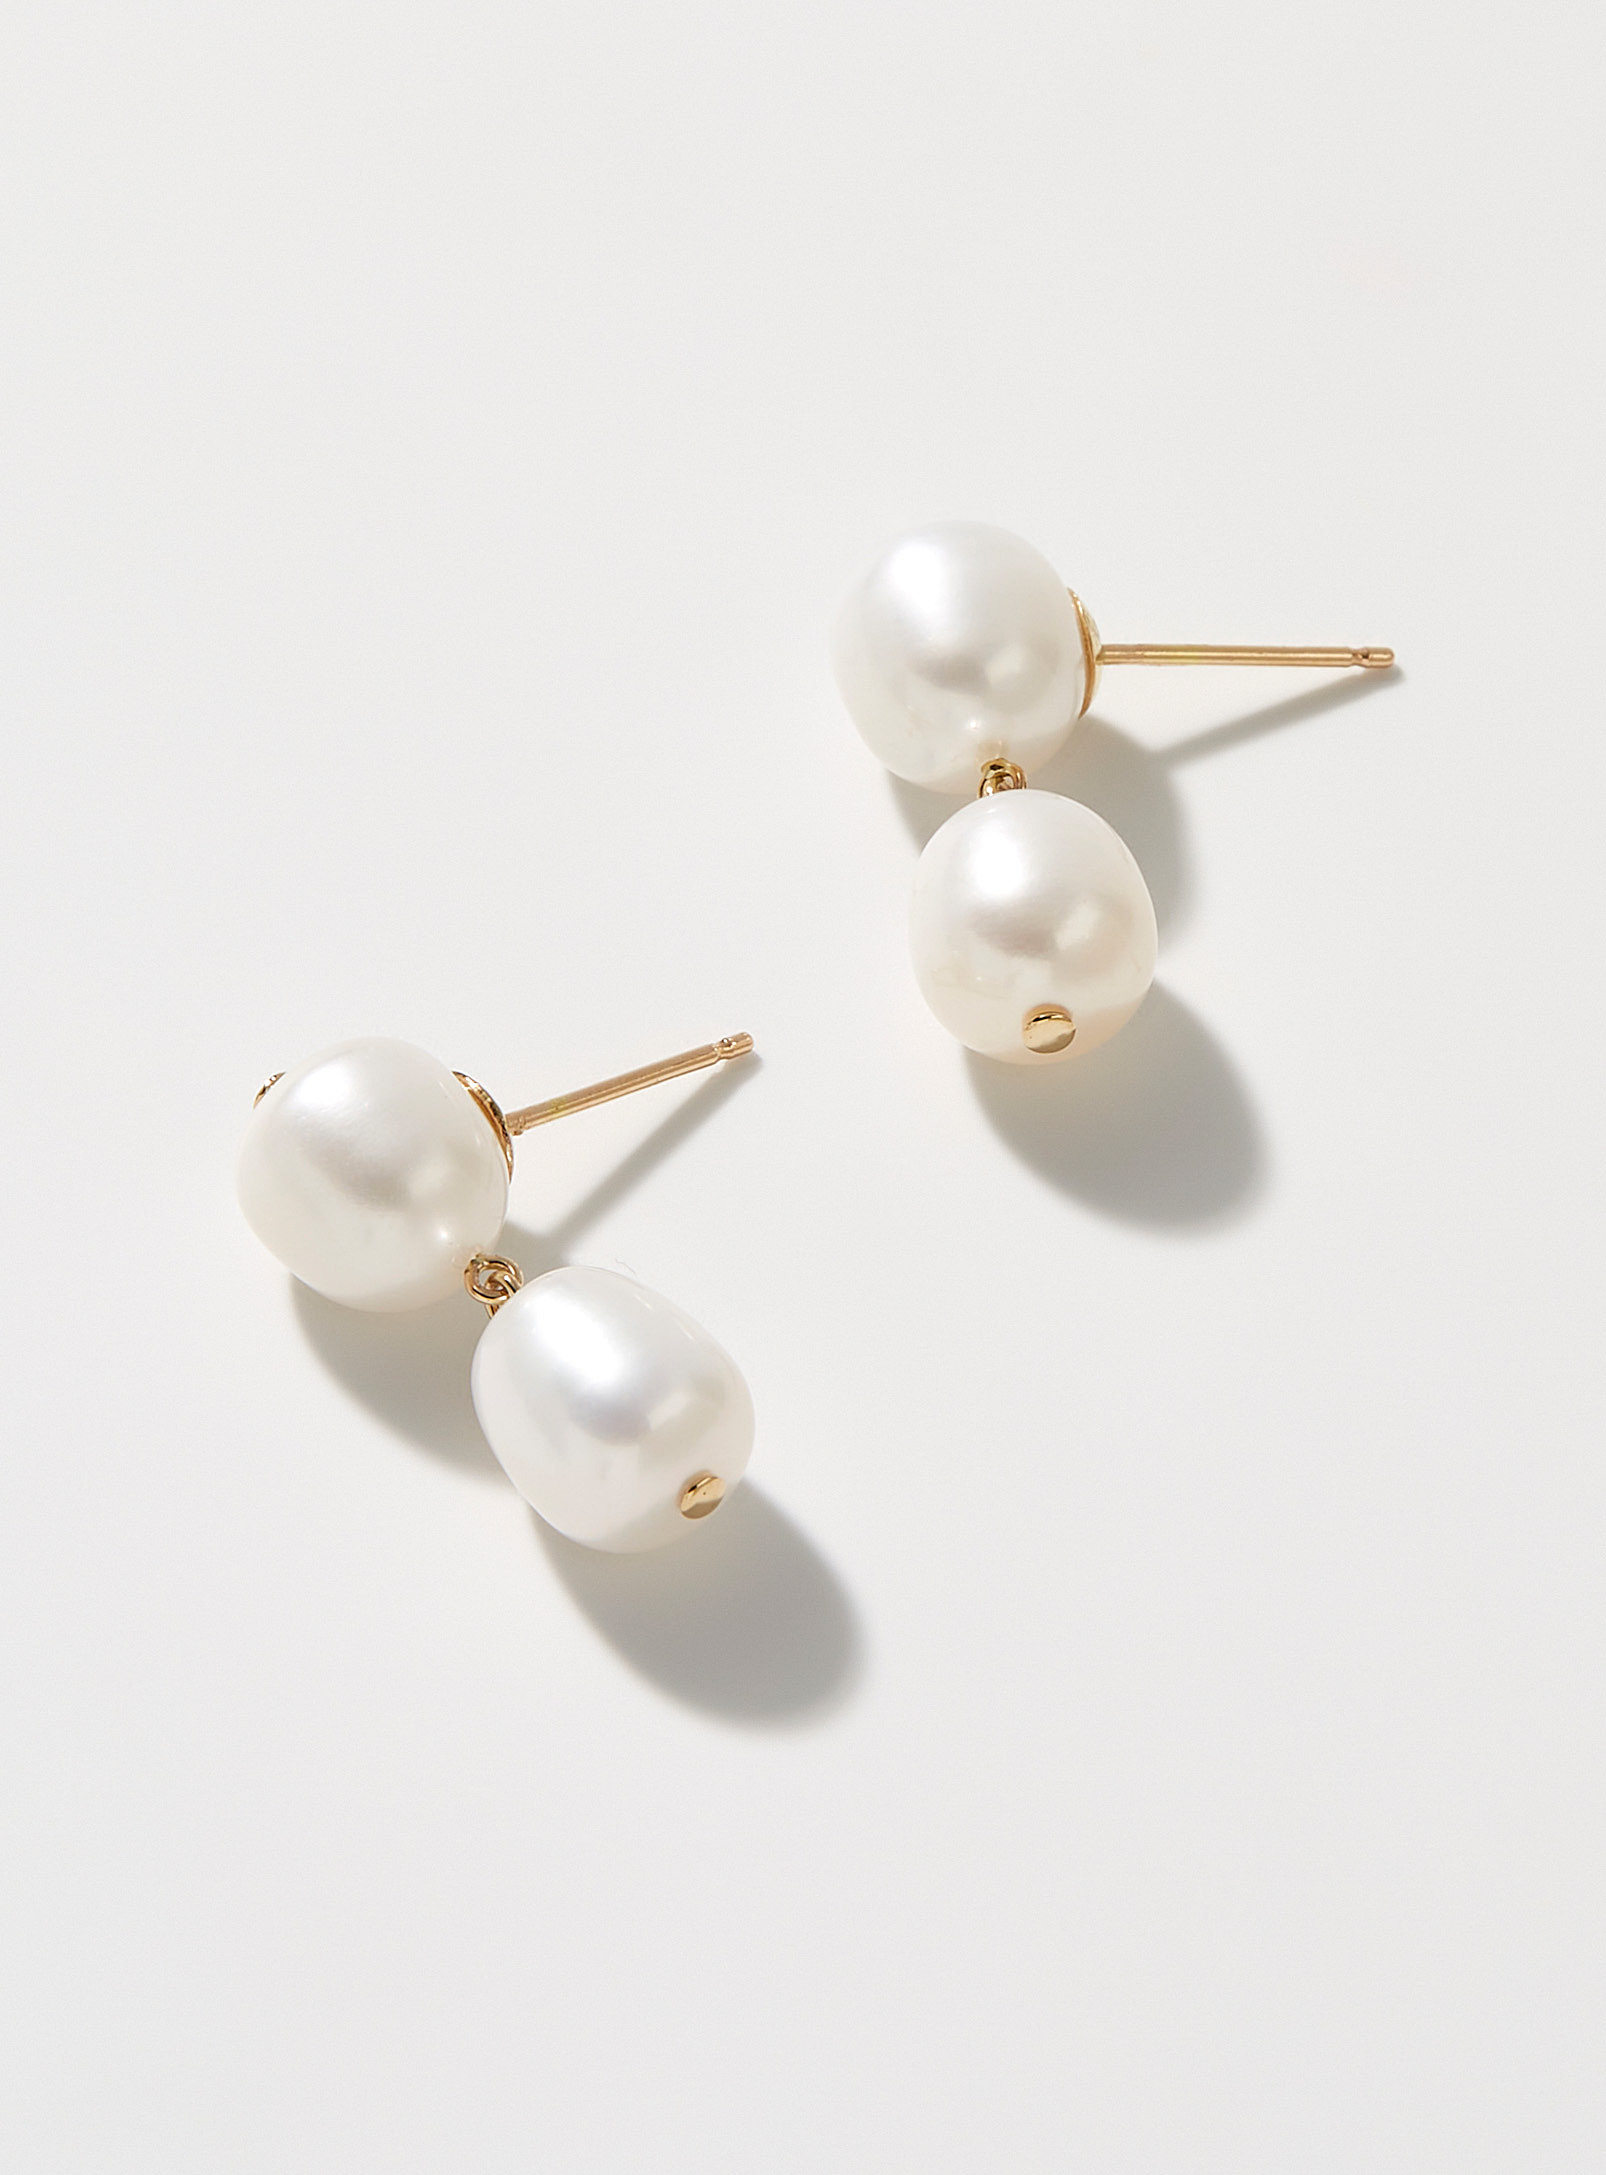 Poppy Finch - Women's Pendant pearls earrings